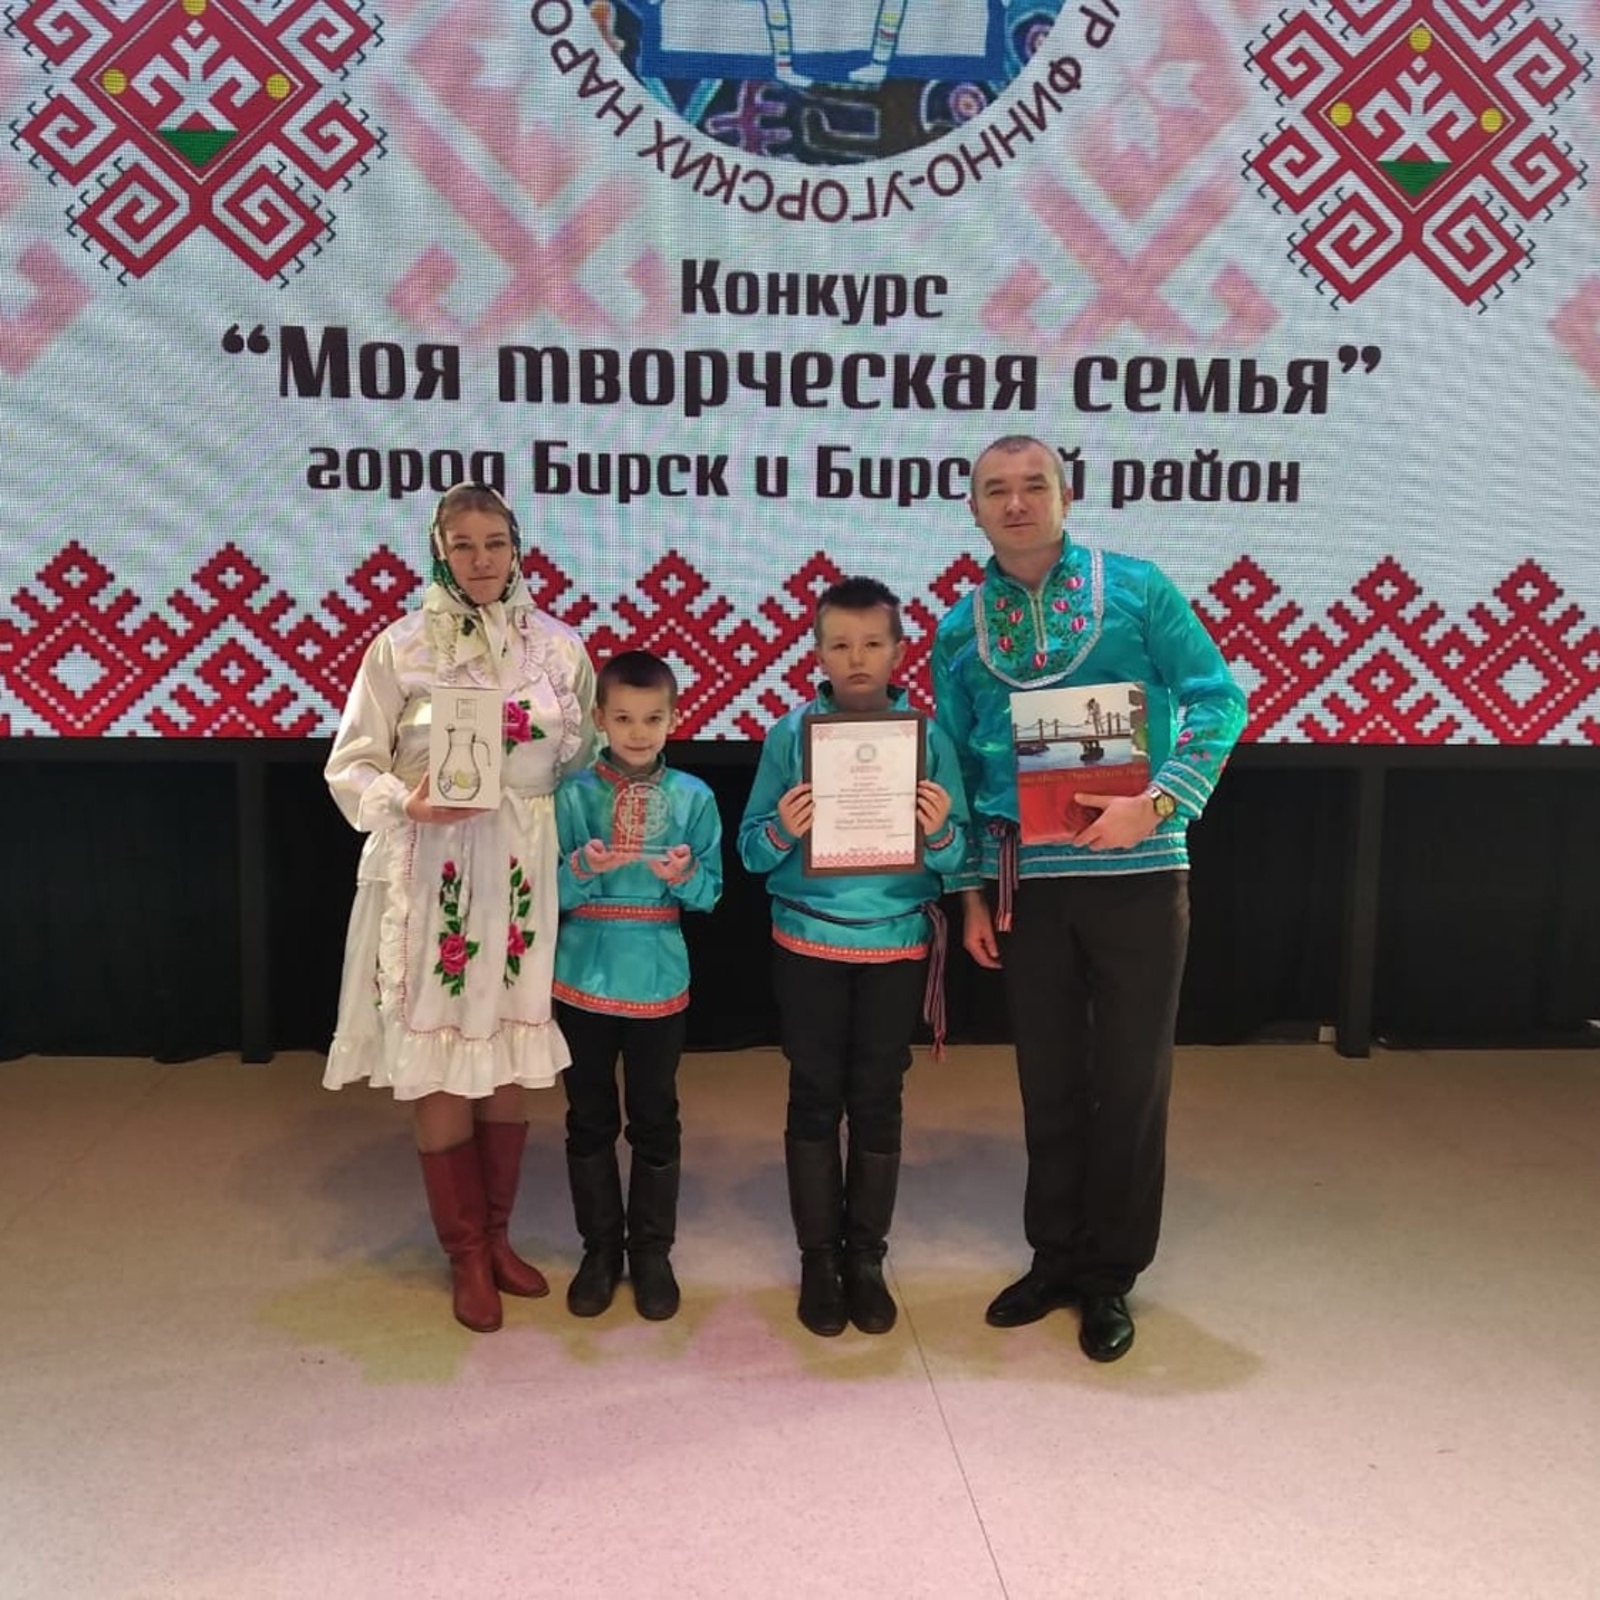 Семья Янситовых из деревни Тынбаево, приняв участие в семейном конкурсе, заняла третье место